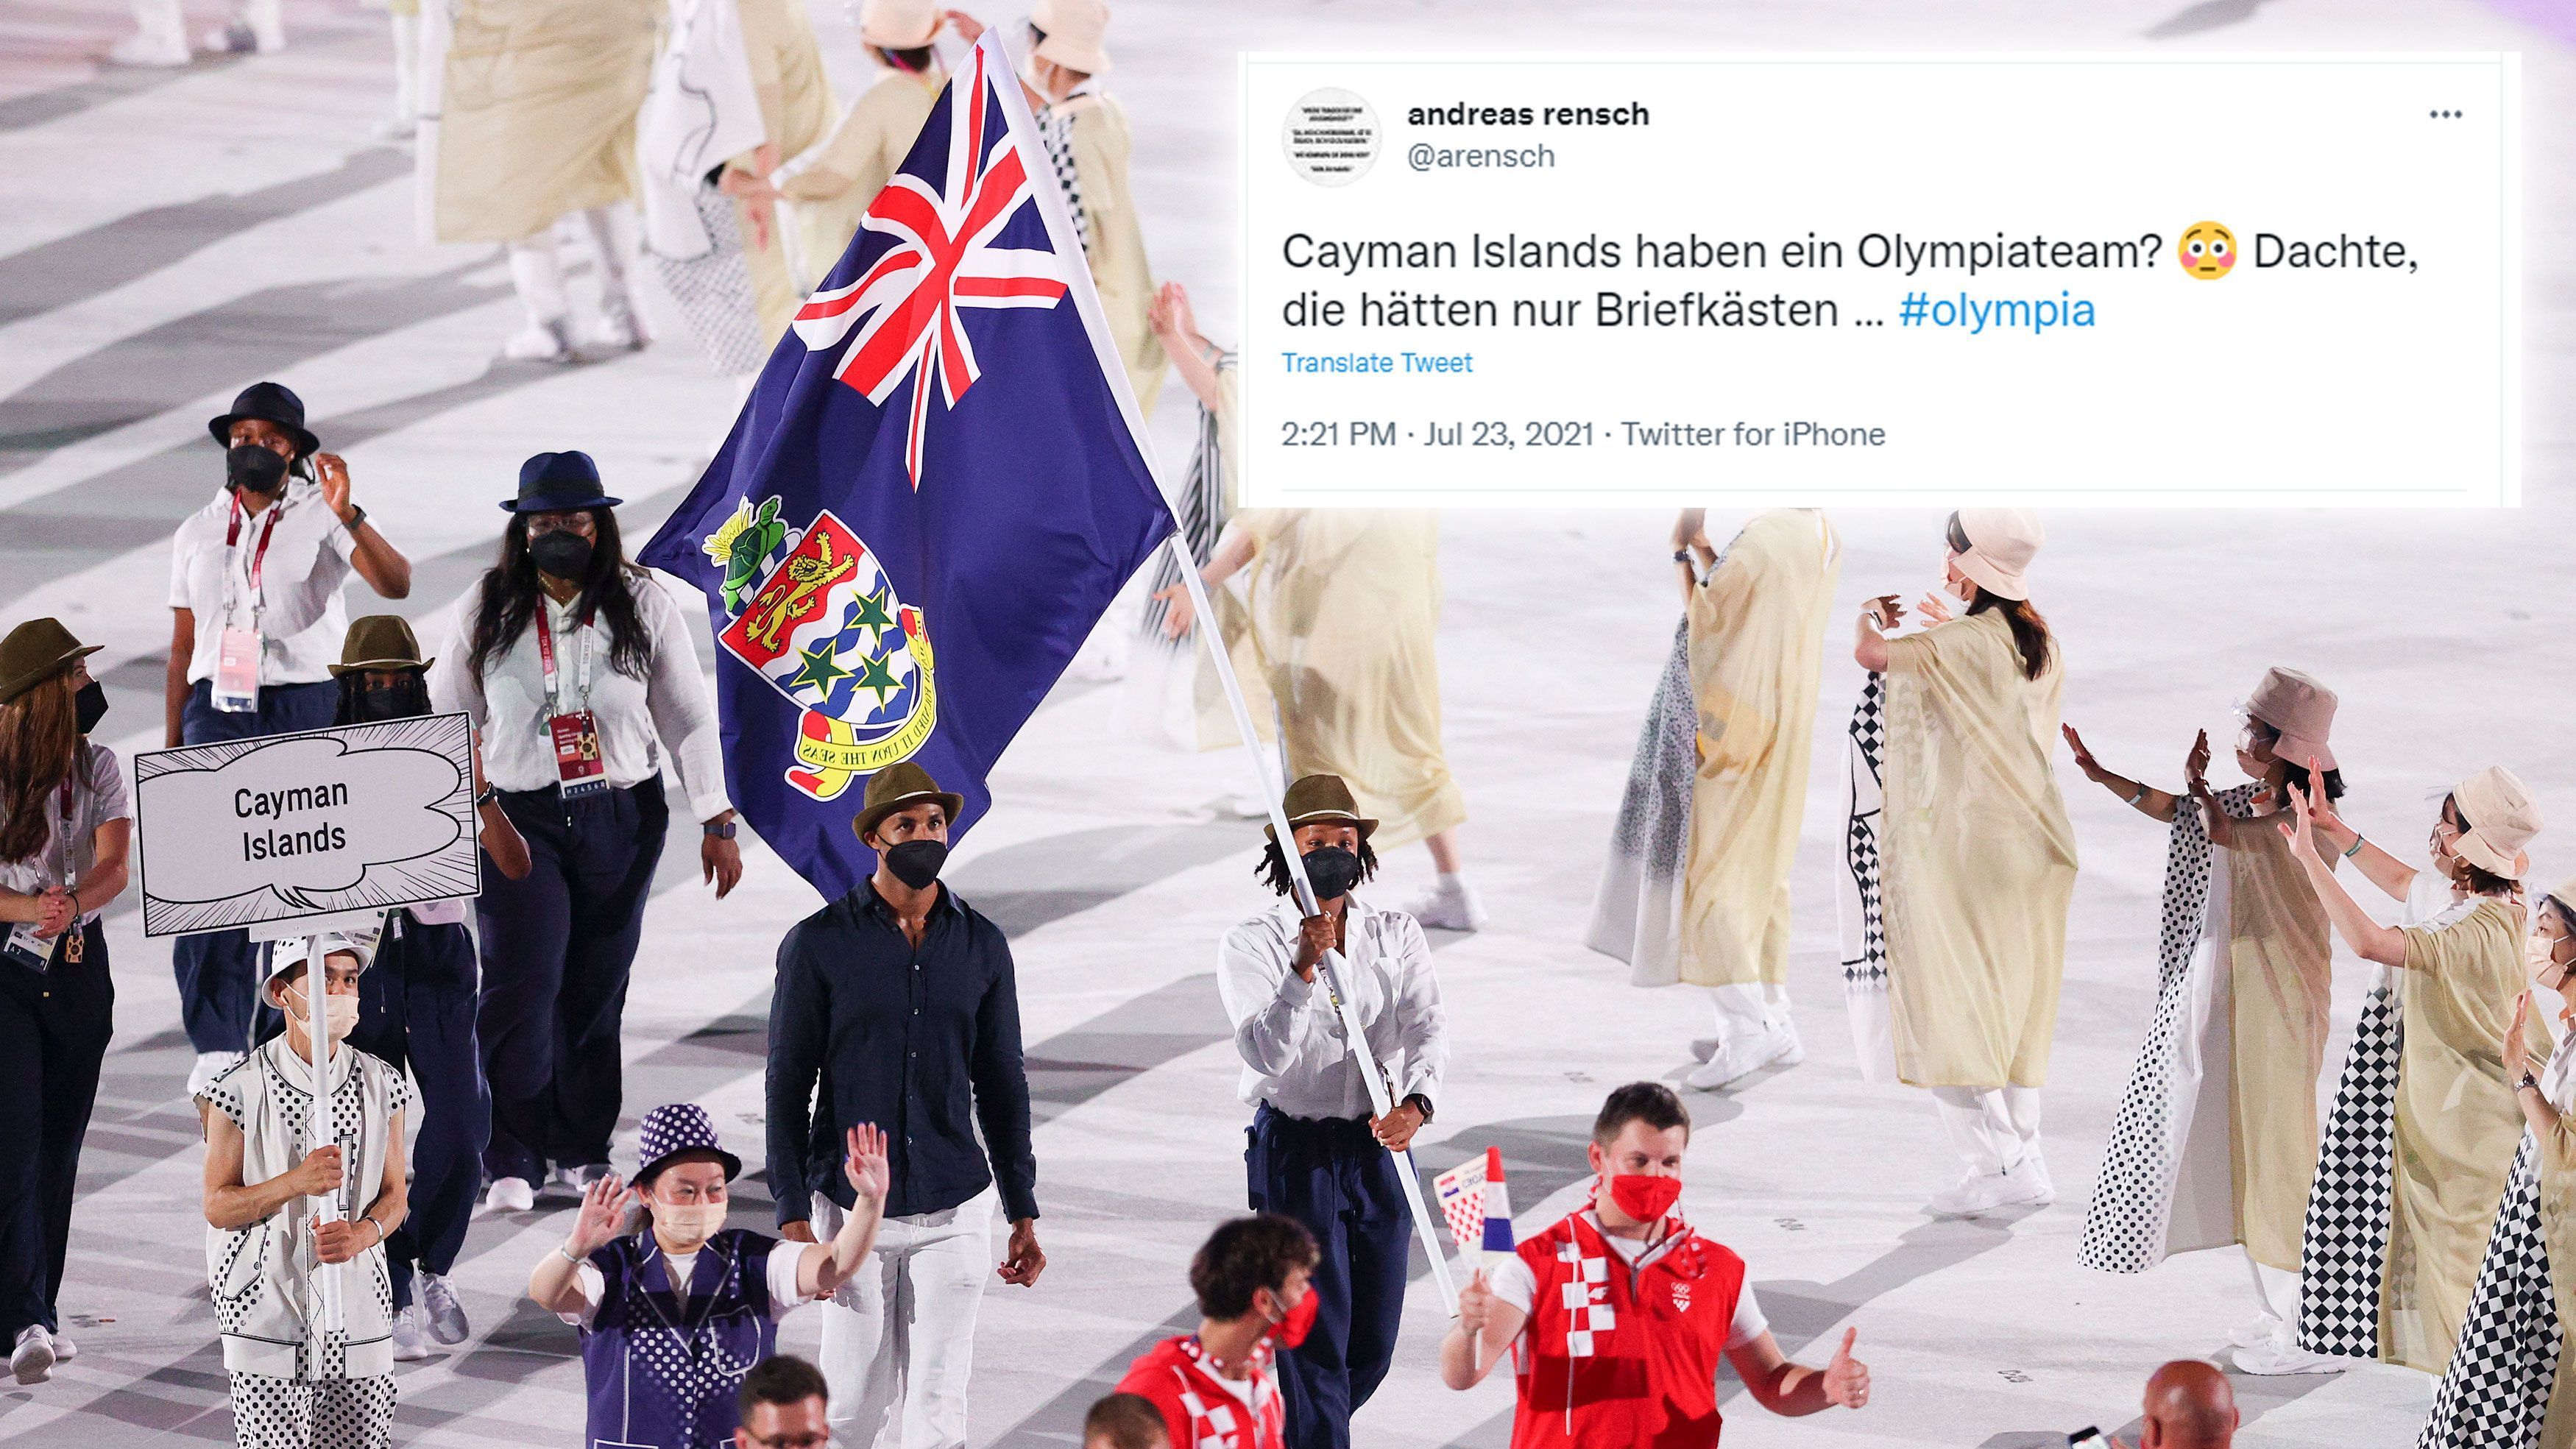 
                <strong>Auch die Cayman Islands sind dabei</strong><br>
                Ja die Cayman Islands haben auch ein Olympia-Team und nicht nur Briefkästen, wie dieser Nutzer anmerkt. Insgesamt sind fünf Athleten für den Inselstaat am Start.
              